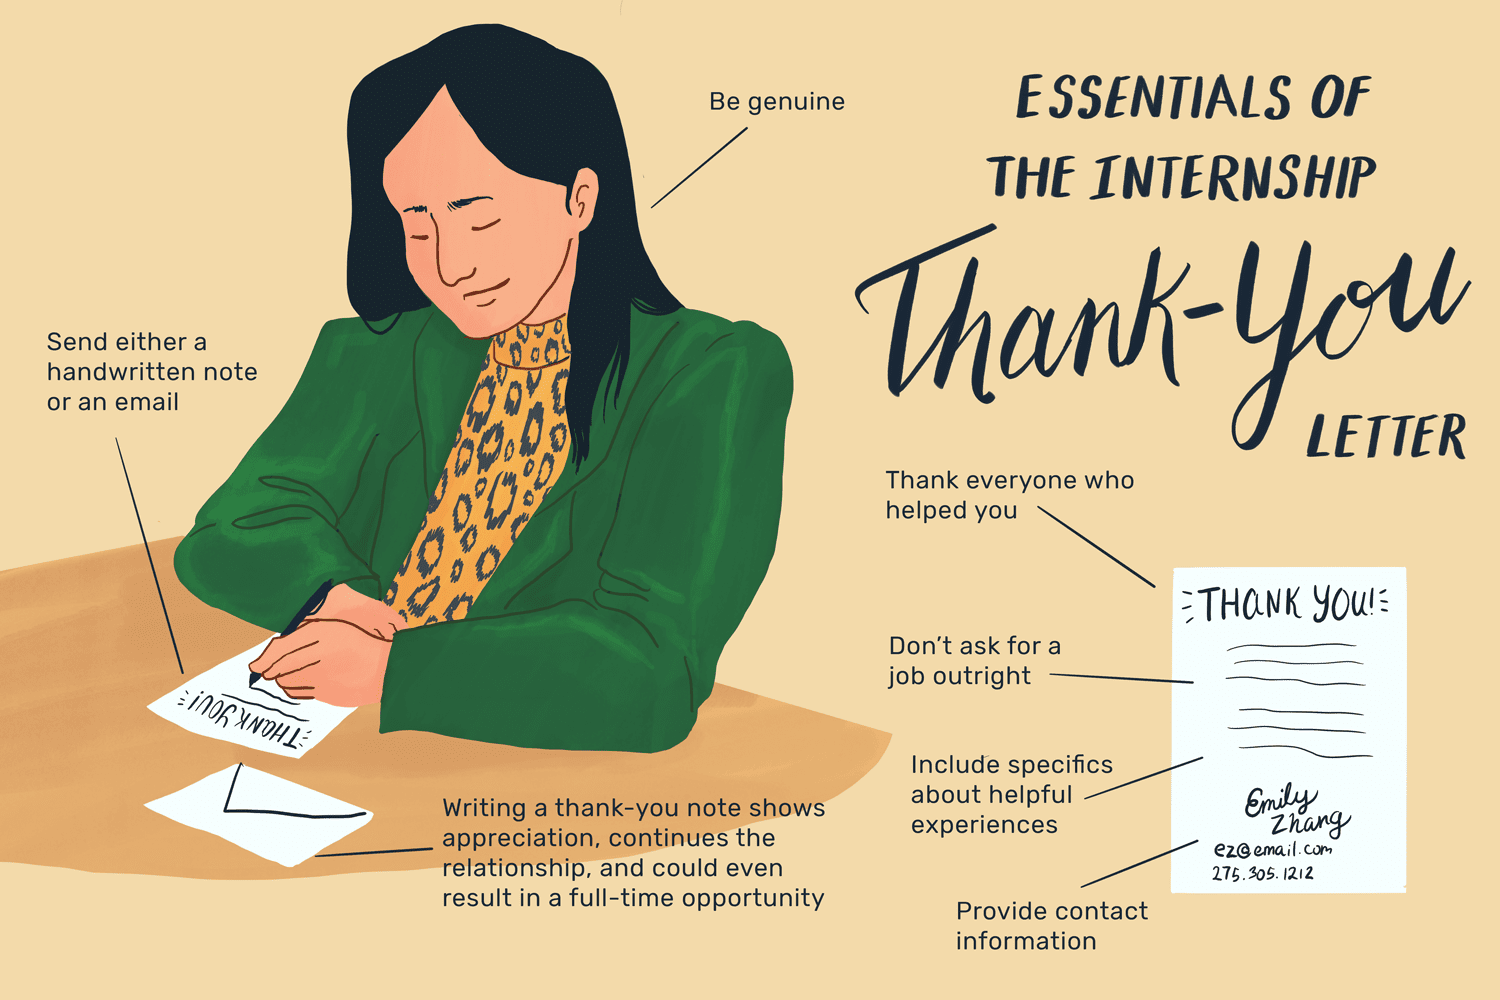 这张图列出了实习感谢信的要点，包括“要真诚”、“发送手写的感谢信或电子邮件”、“写感谢信表示感谢，延续关系，甚至可能带来全职工作的机会”、“感谢每一个帮助过你的人”、“不要直截了当地要求工作”、“包括有用经验的具体细节”以及“提供联系方式”。